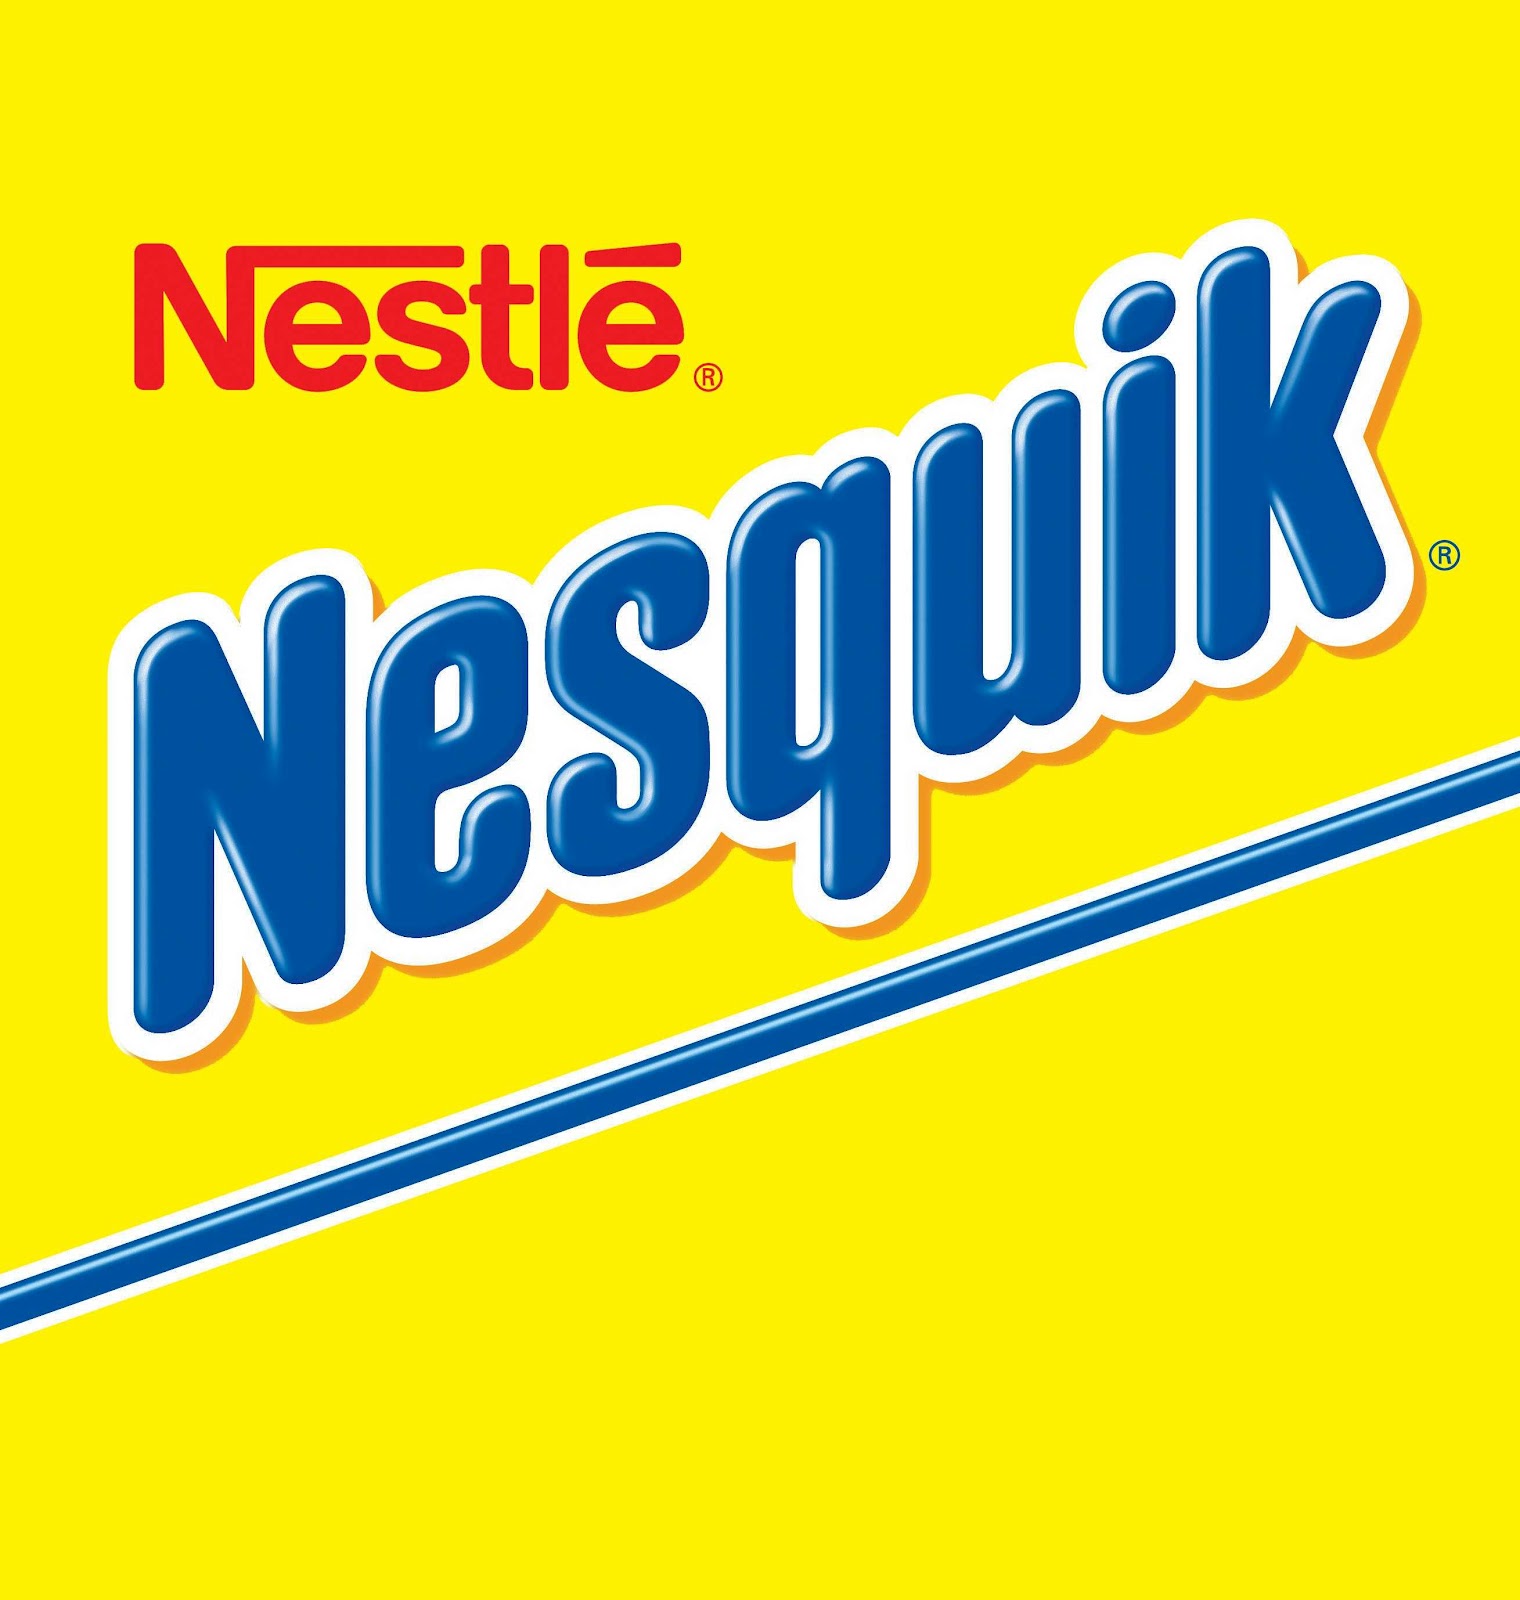 http://1.bp.blogspot.com/-AqacY5ApVMU/T1e7blV3V3I/AAAAAAAAAUc/G2IYV0Q3NrU/s1600/Nestle+nesquik+Logo.jpg